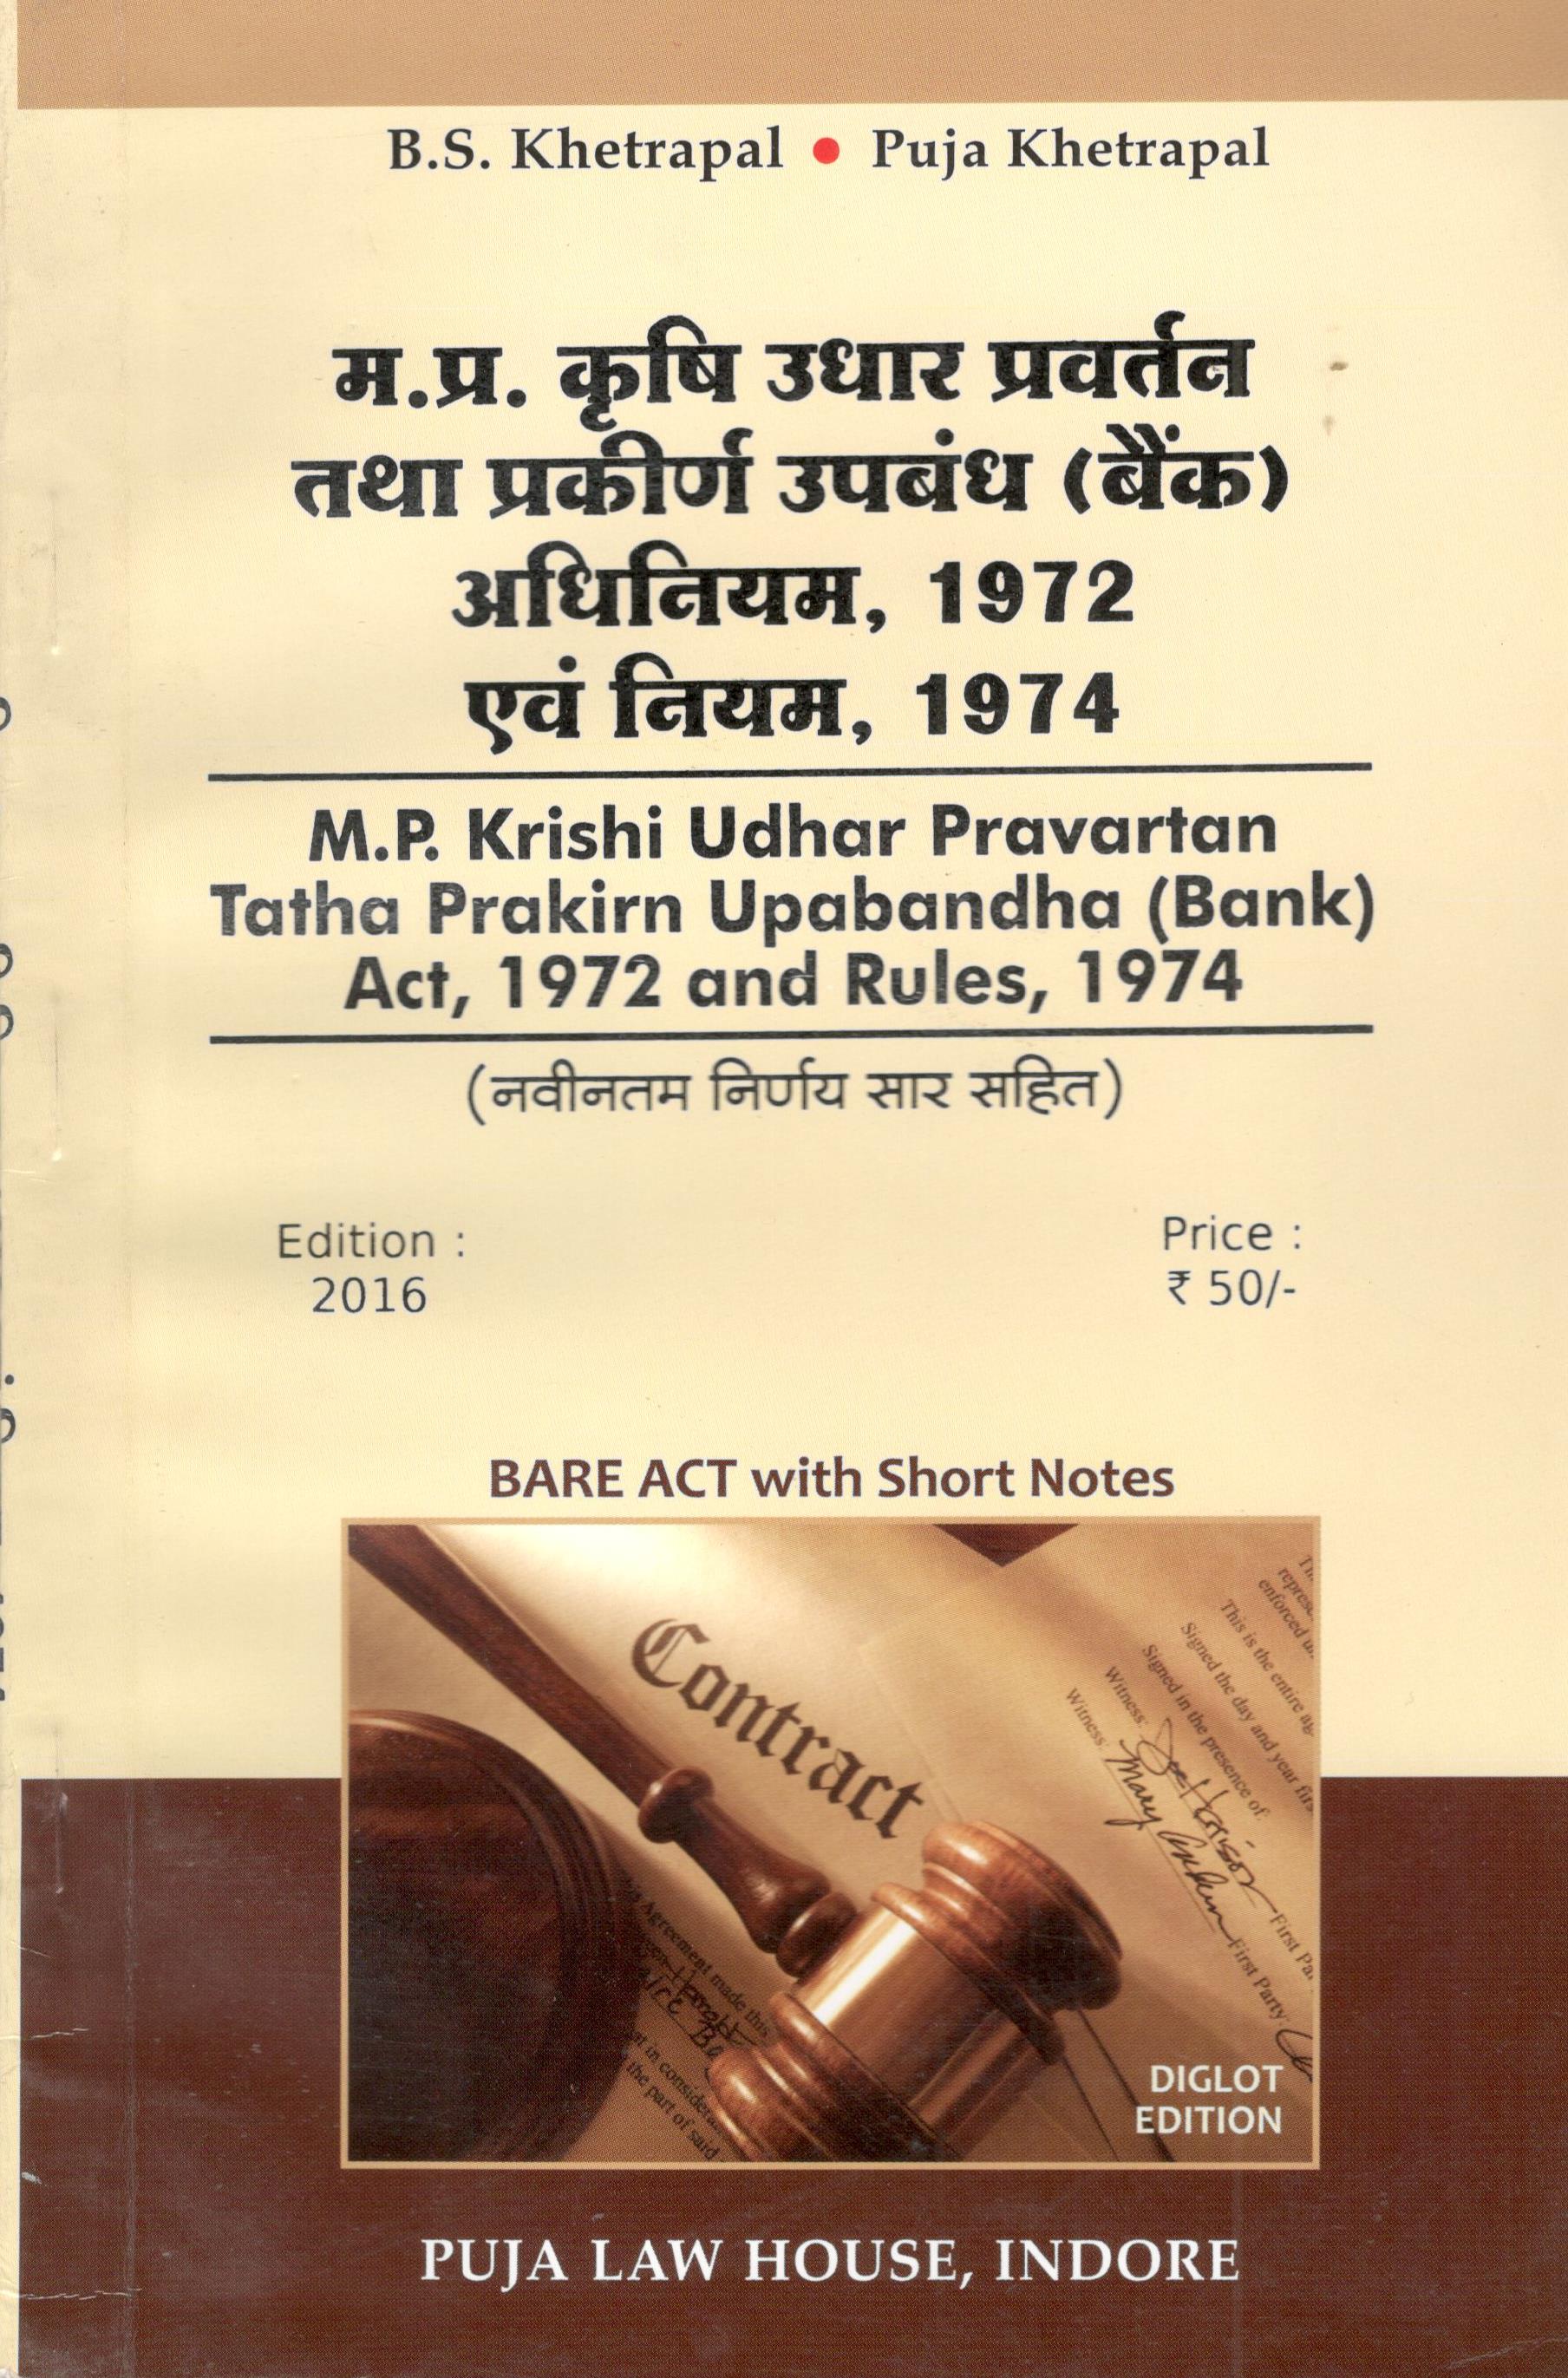  Buy मध्य प्रदेश कृषि उधार प्रवर्तन एवं प्रकीर्ण उपबंध (बैंक) अधिनियम, 1972 एवं नियम, 1974 / Madhya Pradesh Krishi Udhar Pravartan tatha prakiran Upabandha (Bank) Act, 1972 & Rules, 1974		